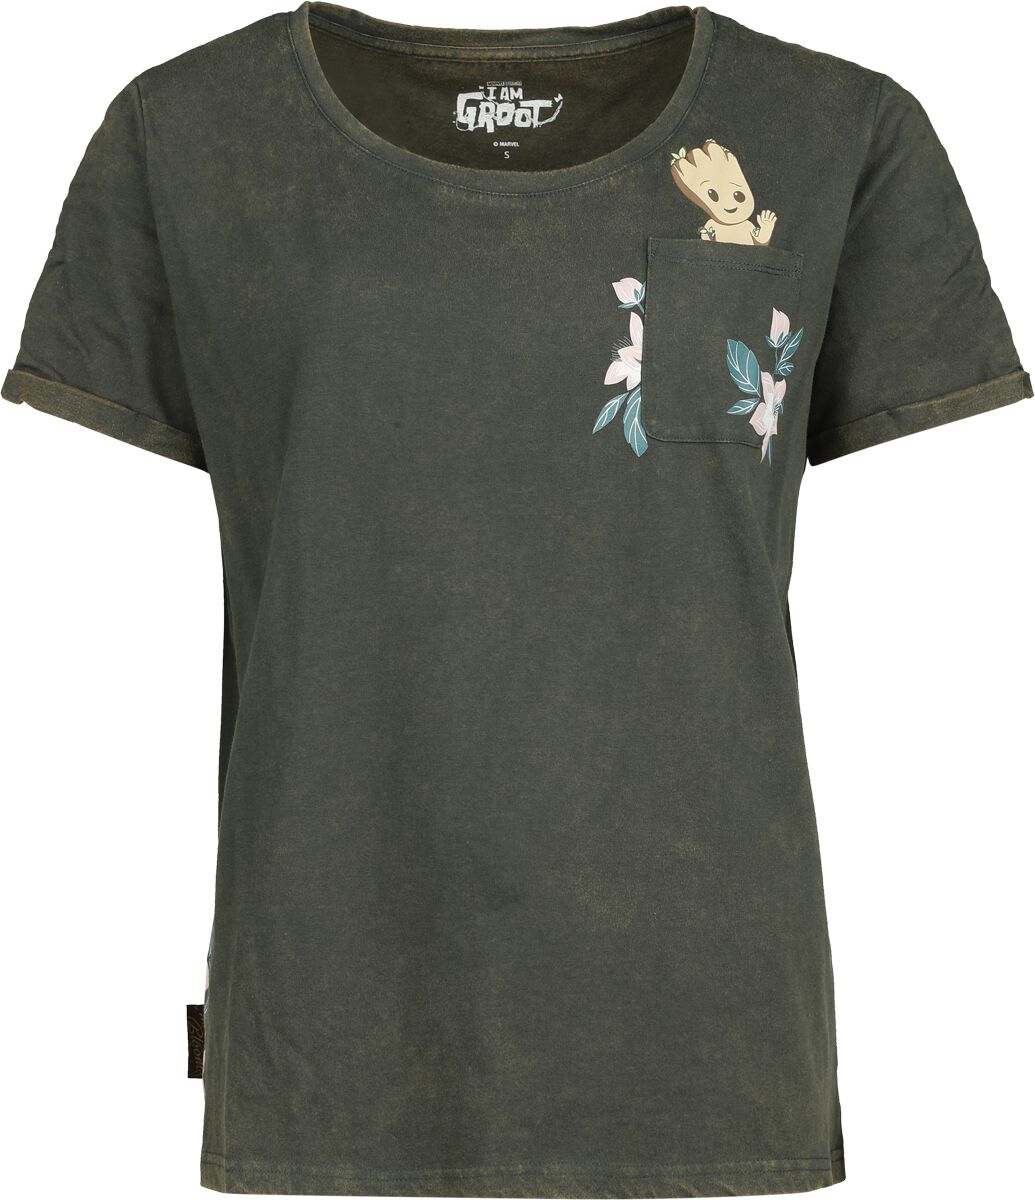 Guardians Of The Galaxy T-Shirt - Groot Floral - S bis XXL - für Damen - Größe L - dunkelgrün  - EMP exklusives Merchandise!